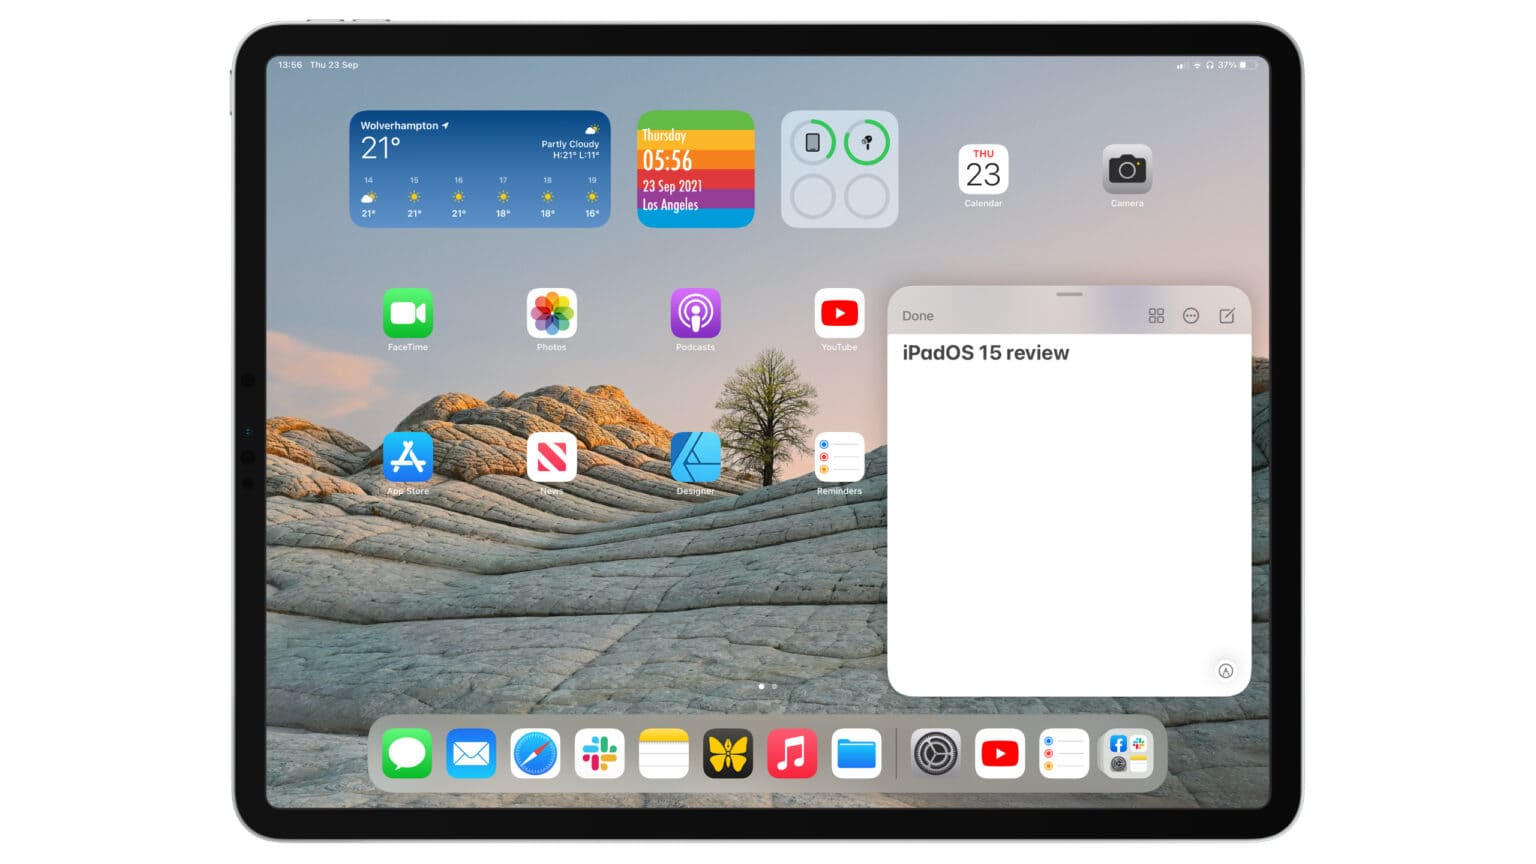 iPadOS 15 review